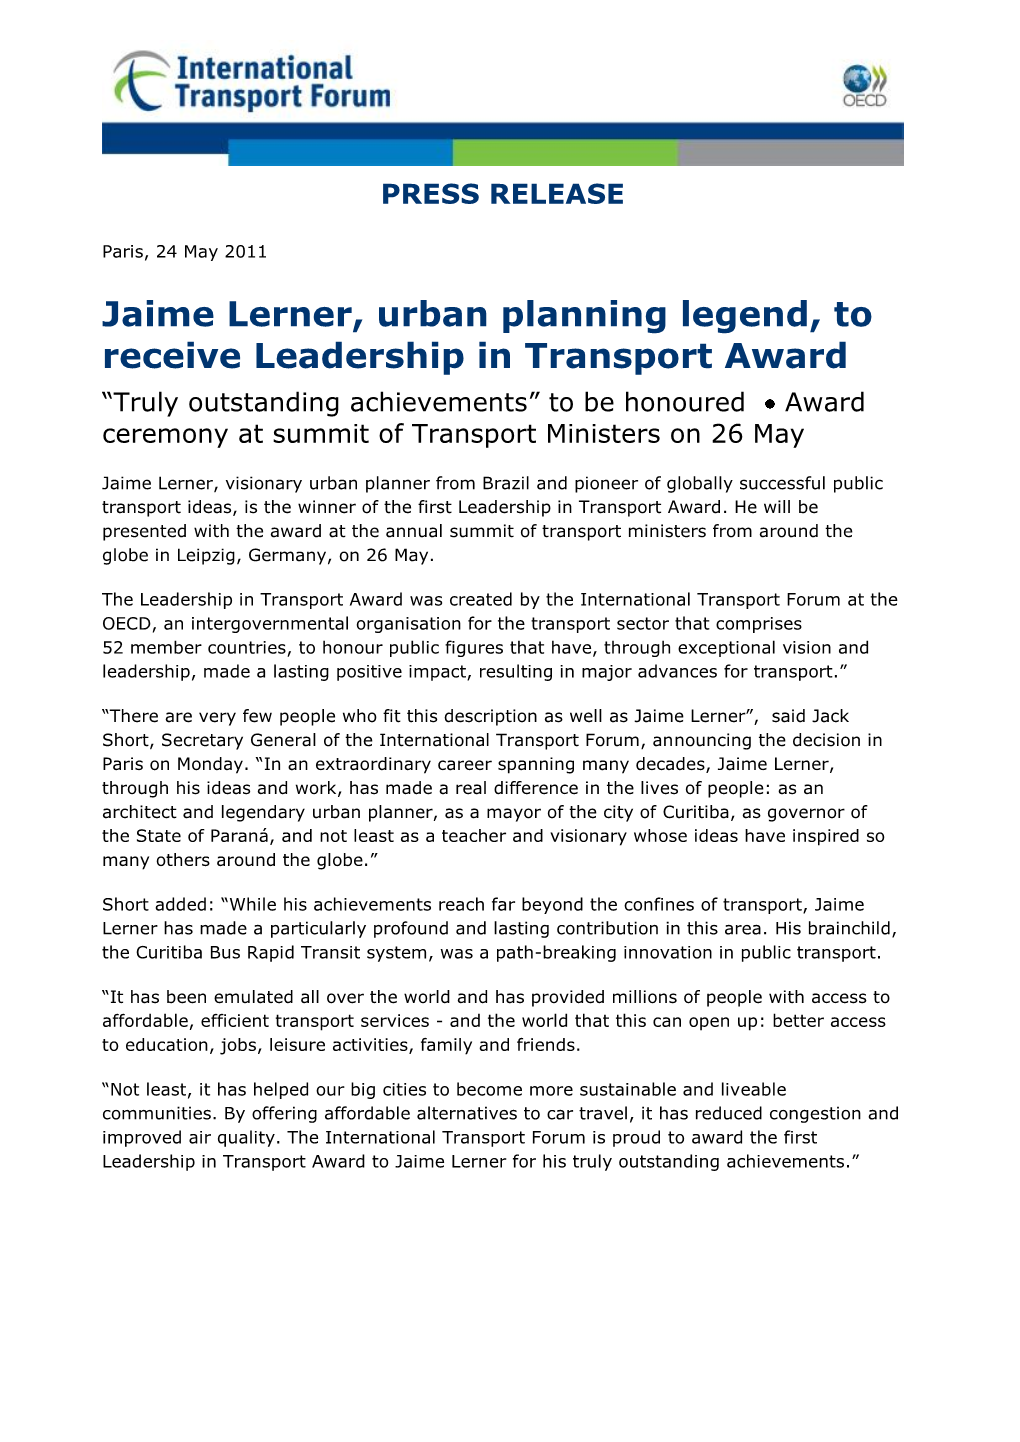 Jaime Lerner, Urban Planning Legend, to Receive Leadership in Transport